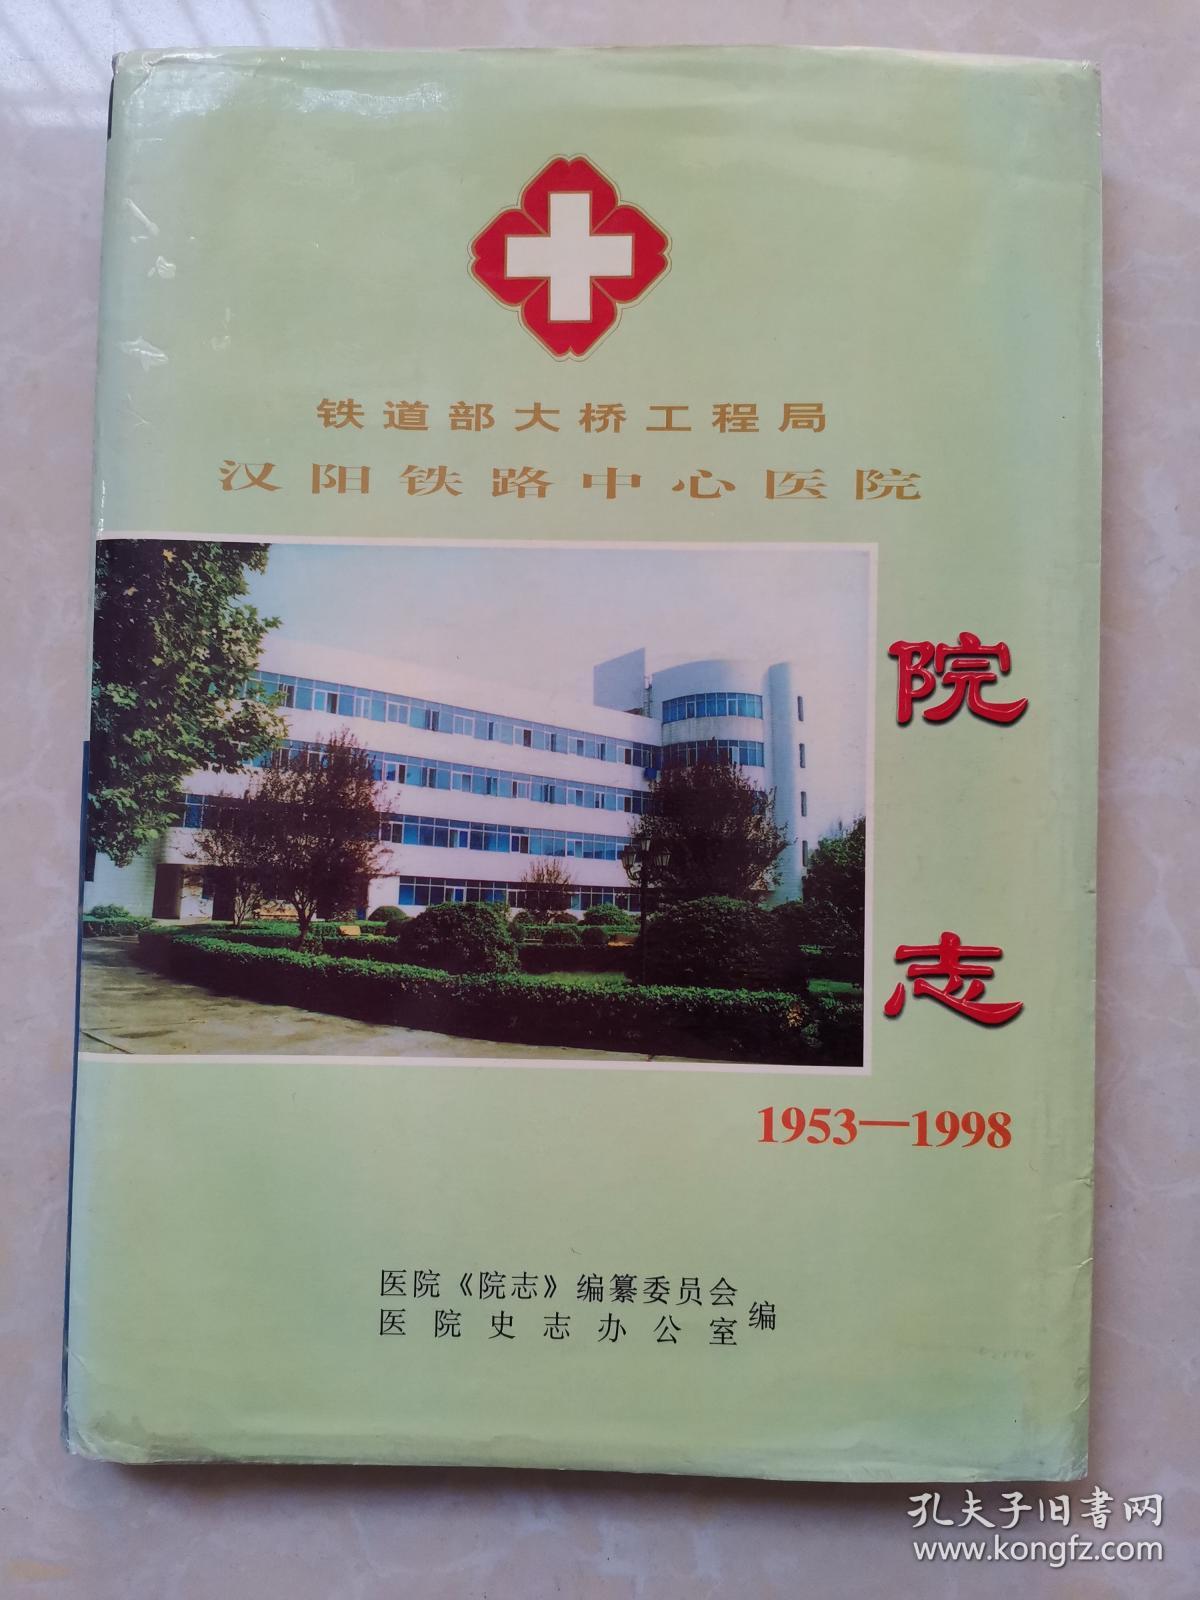 铁道部大桥工程局汉阳铁路中心医院院志 1953-1998